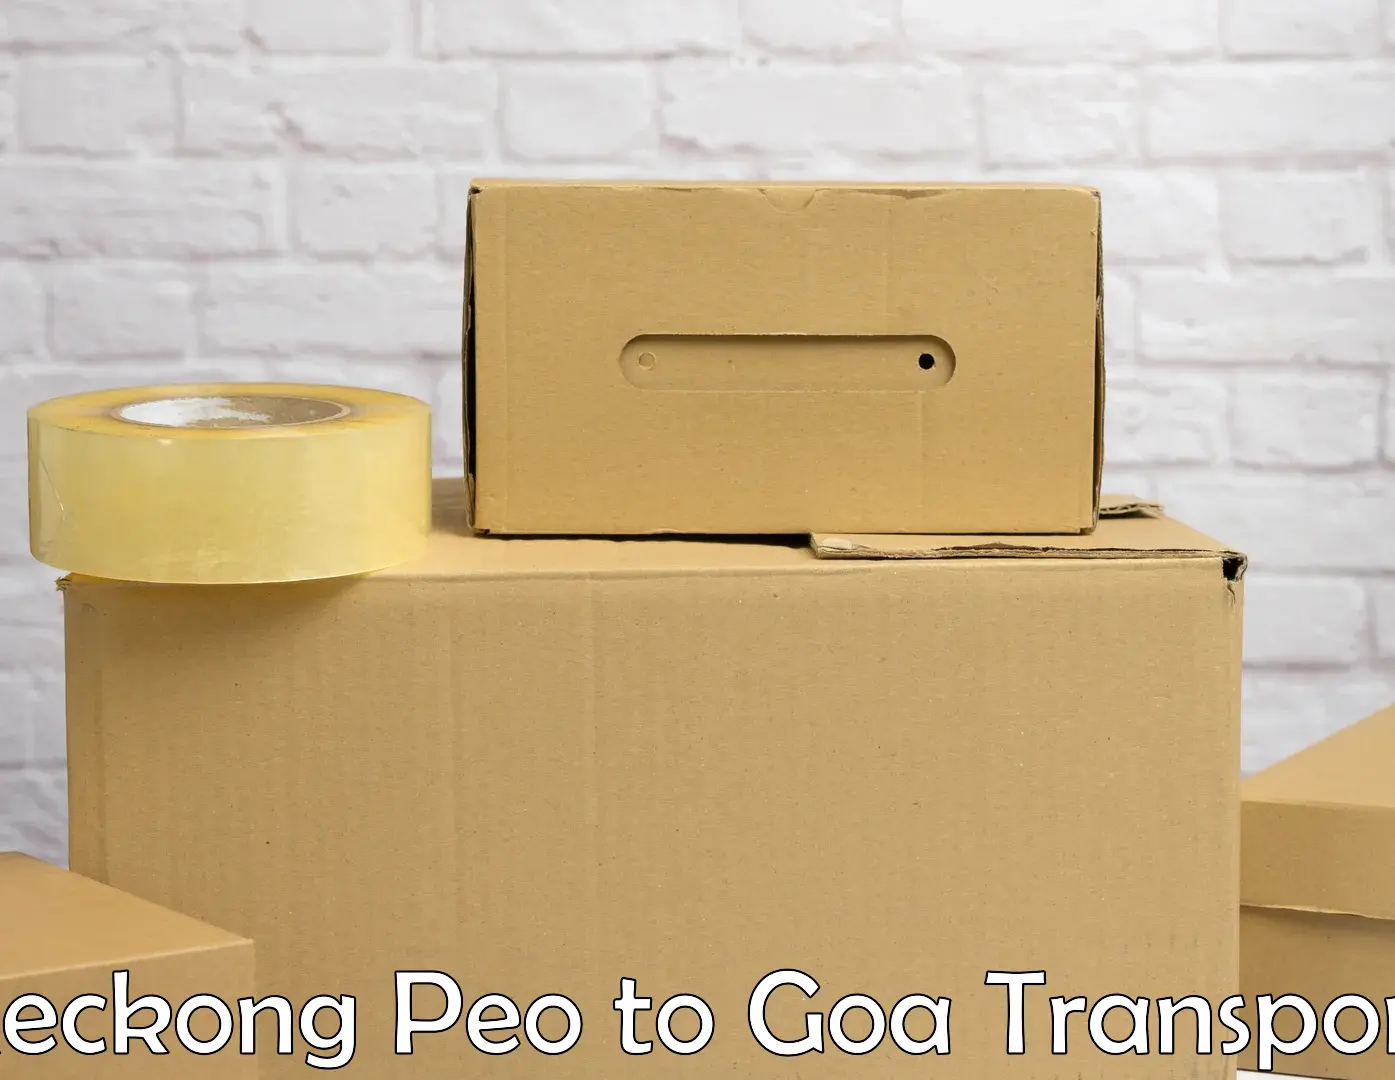 Transportation services Reckong Peo to Vasco da Gama